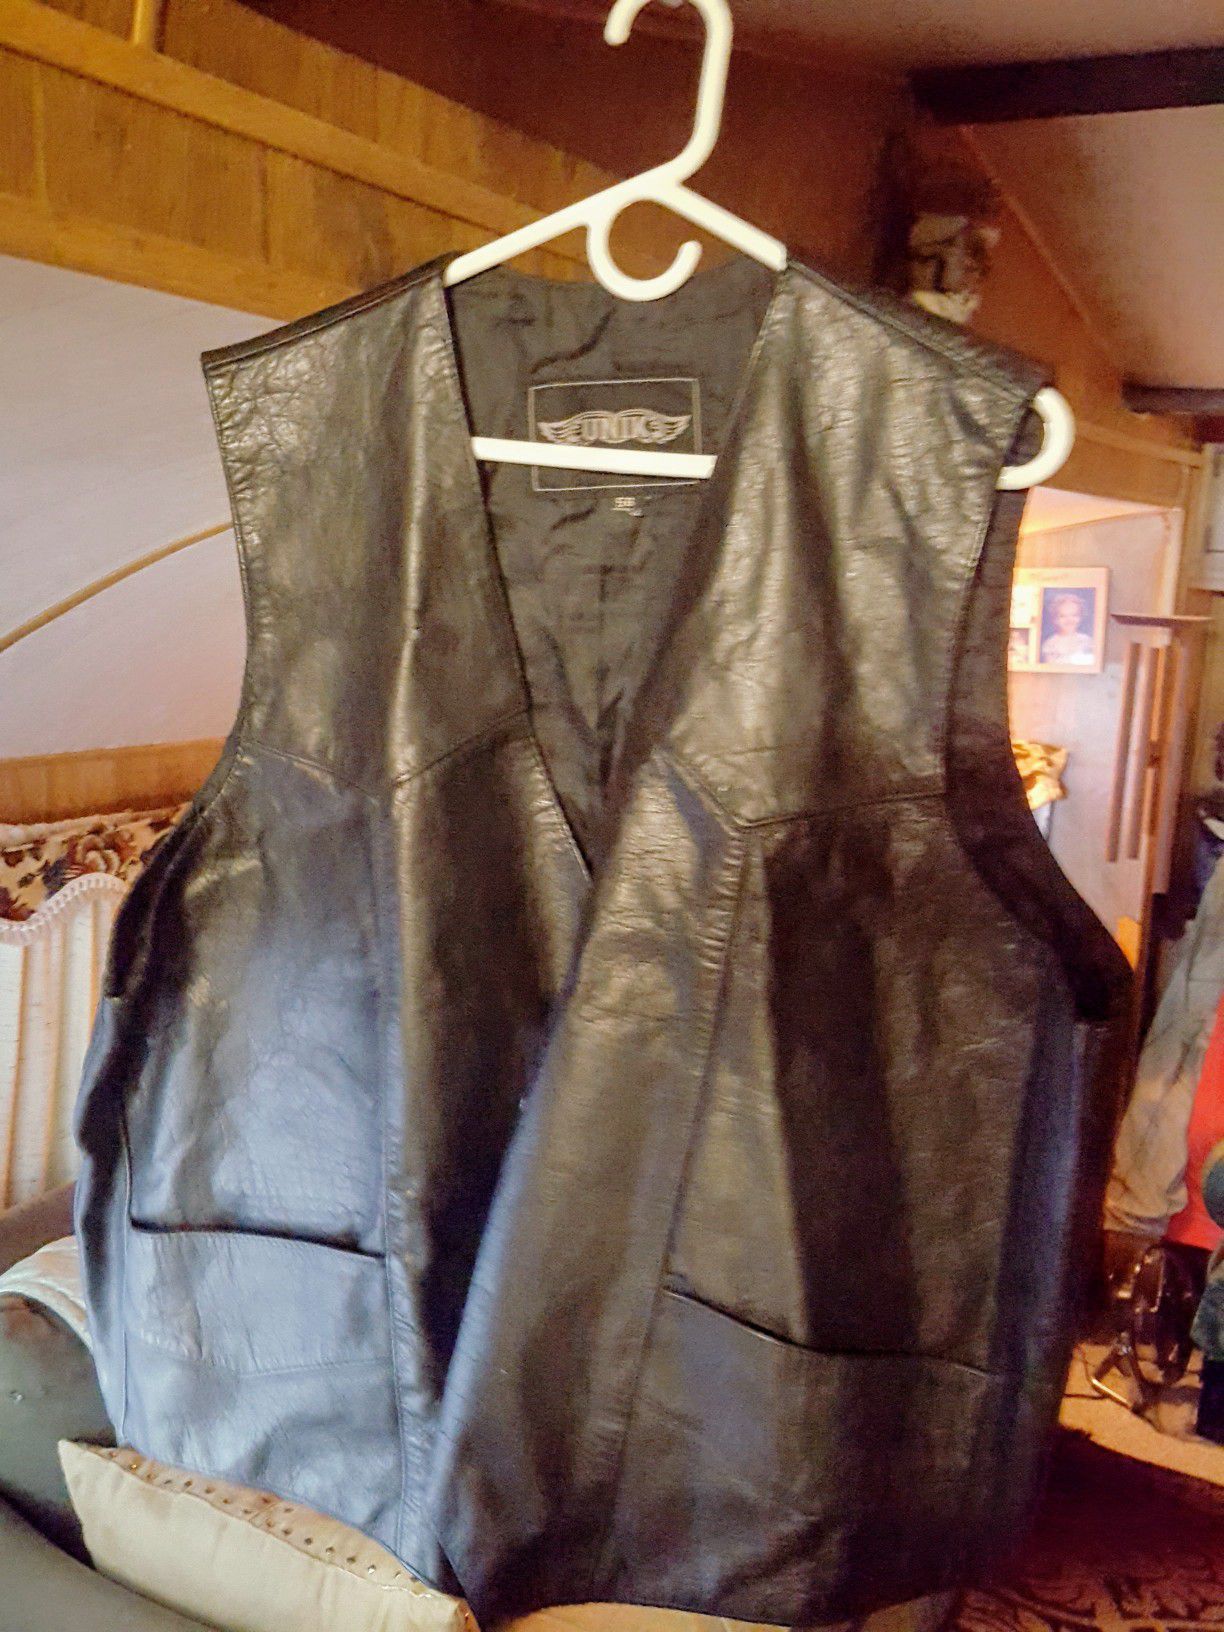 Leather vest. New.